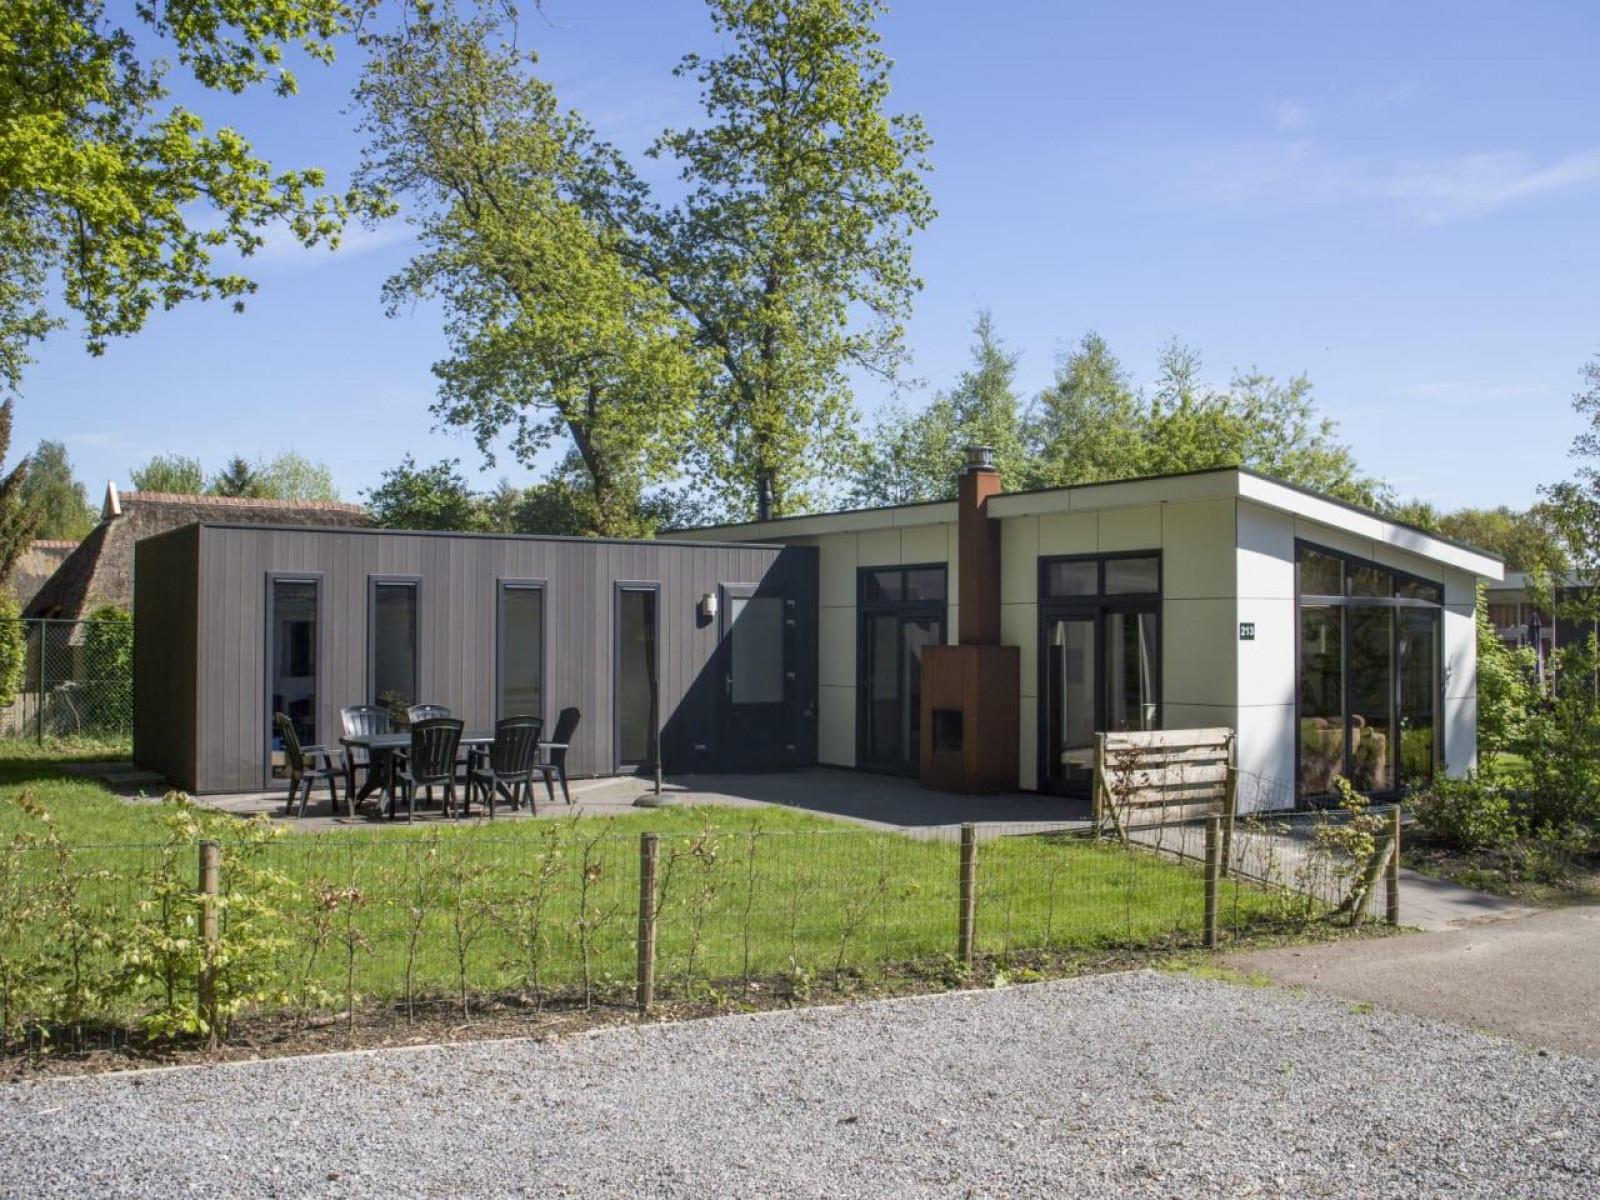 Heerlijkehuisjes.nl Luxe 6 persoons vakantiehuis op vakantiepark Reestervallei in Overijssel - Nederland - Europa - IJhorst